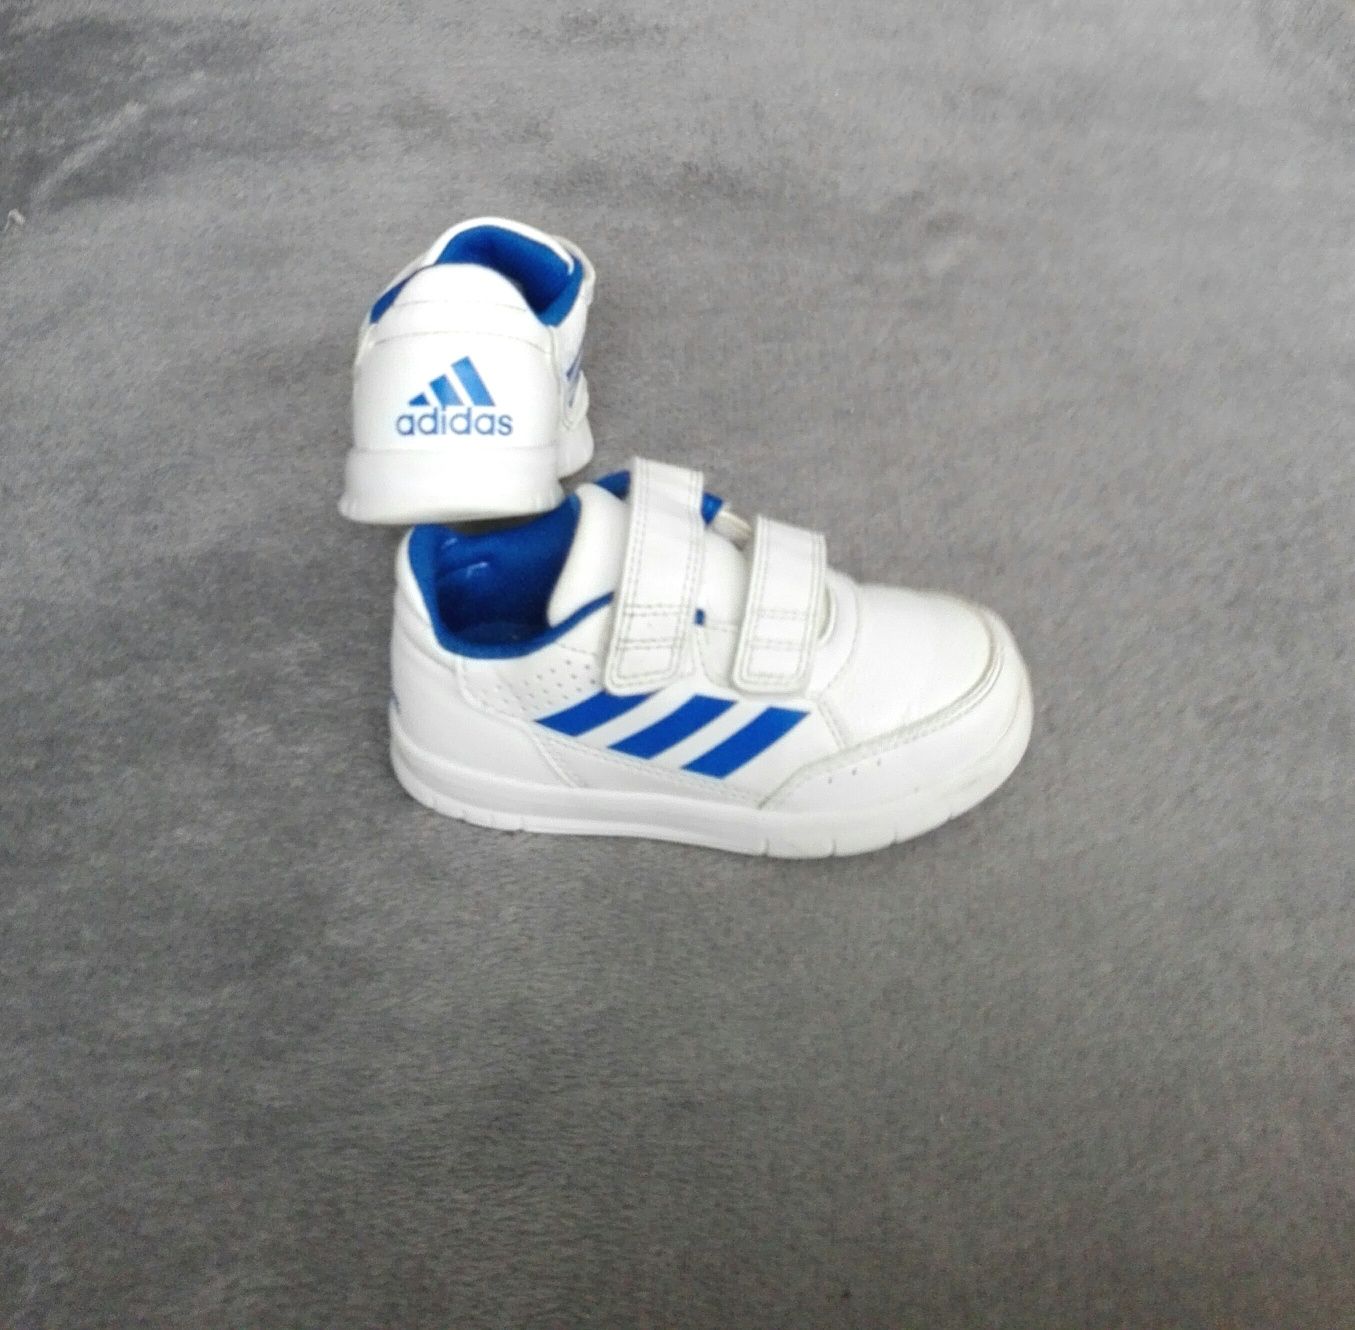 Adidas oryginalne buty sportowe adidasy na rzepy rozm 25,5 26